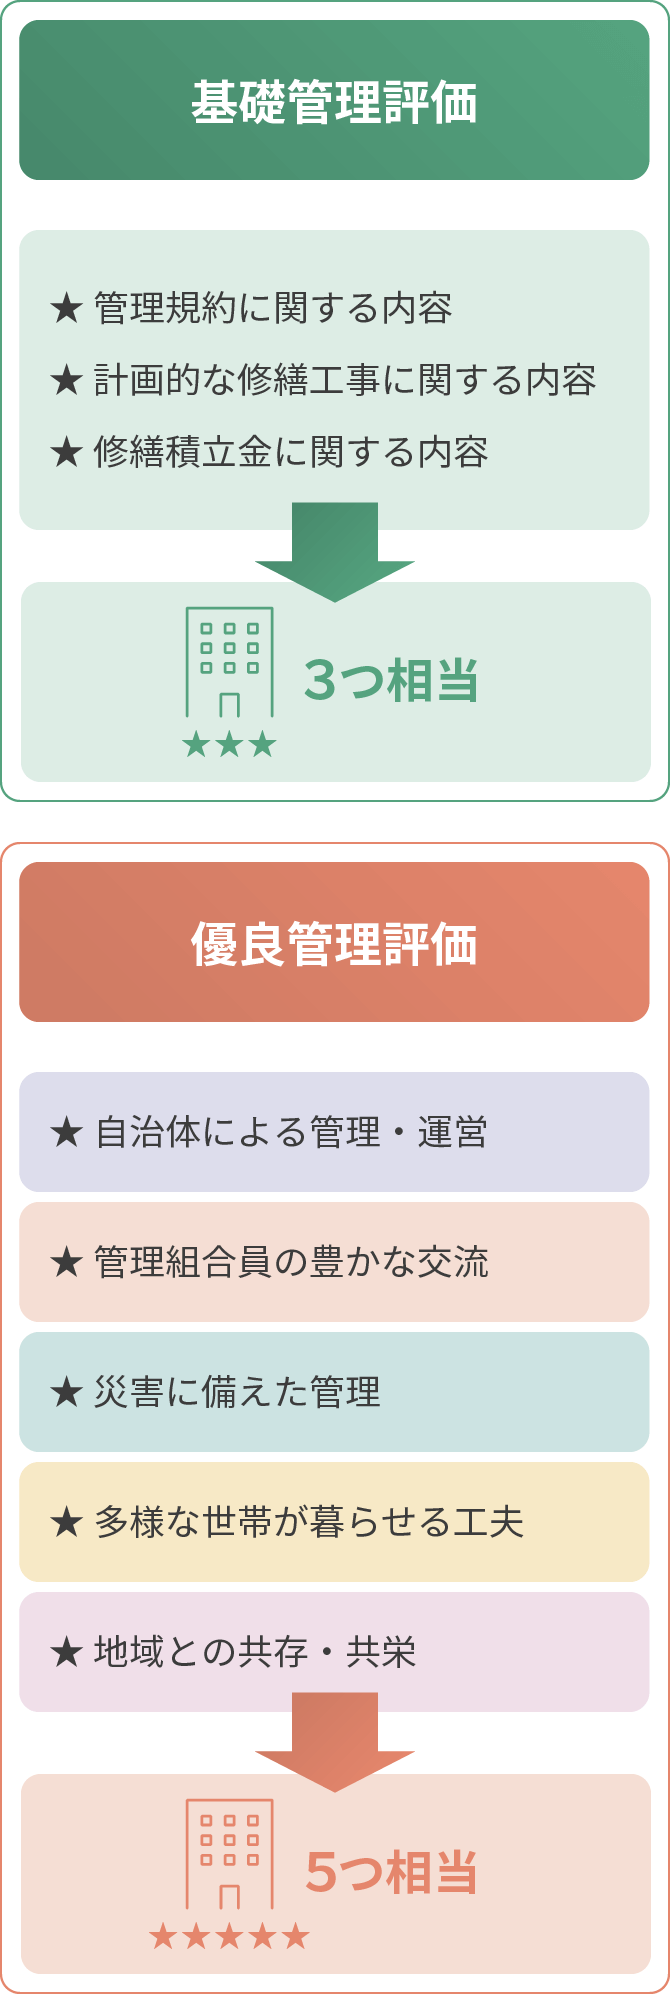 京都マンション管理評価機構 マンション管理評価の流れ